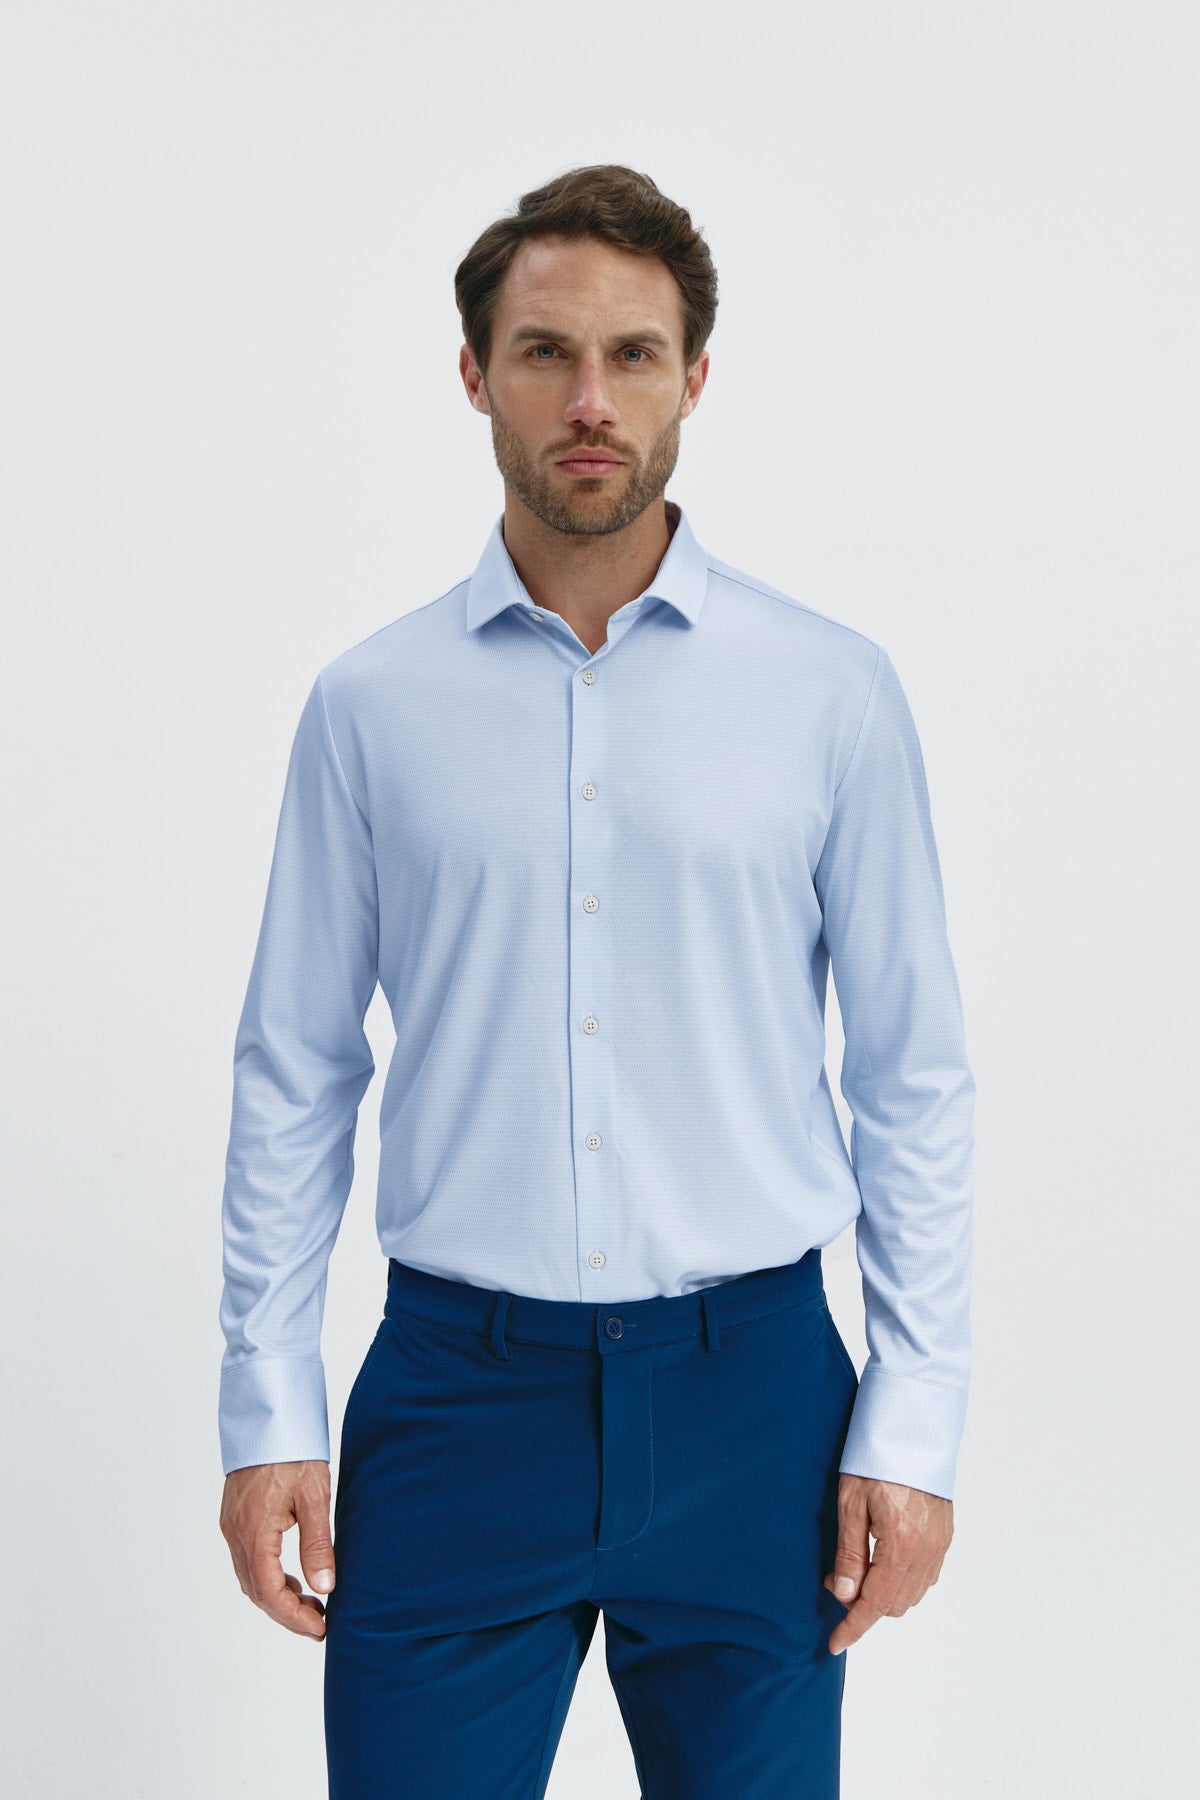 Camisa de vestir regular fit para hombre azul: Camisa de vestir regular fit para hombre en color azul, sin arrugas, antimanchas, elegante y cómoda. Foto de frente.